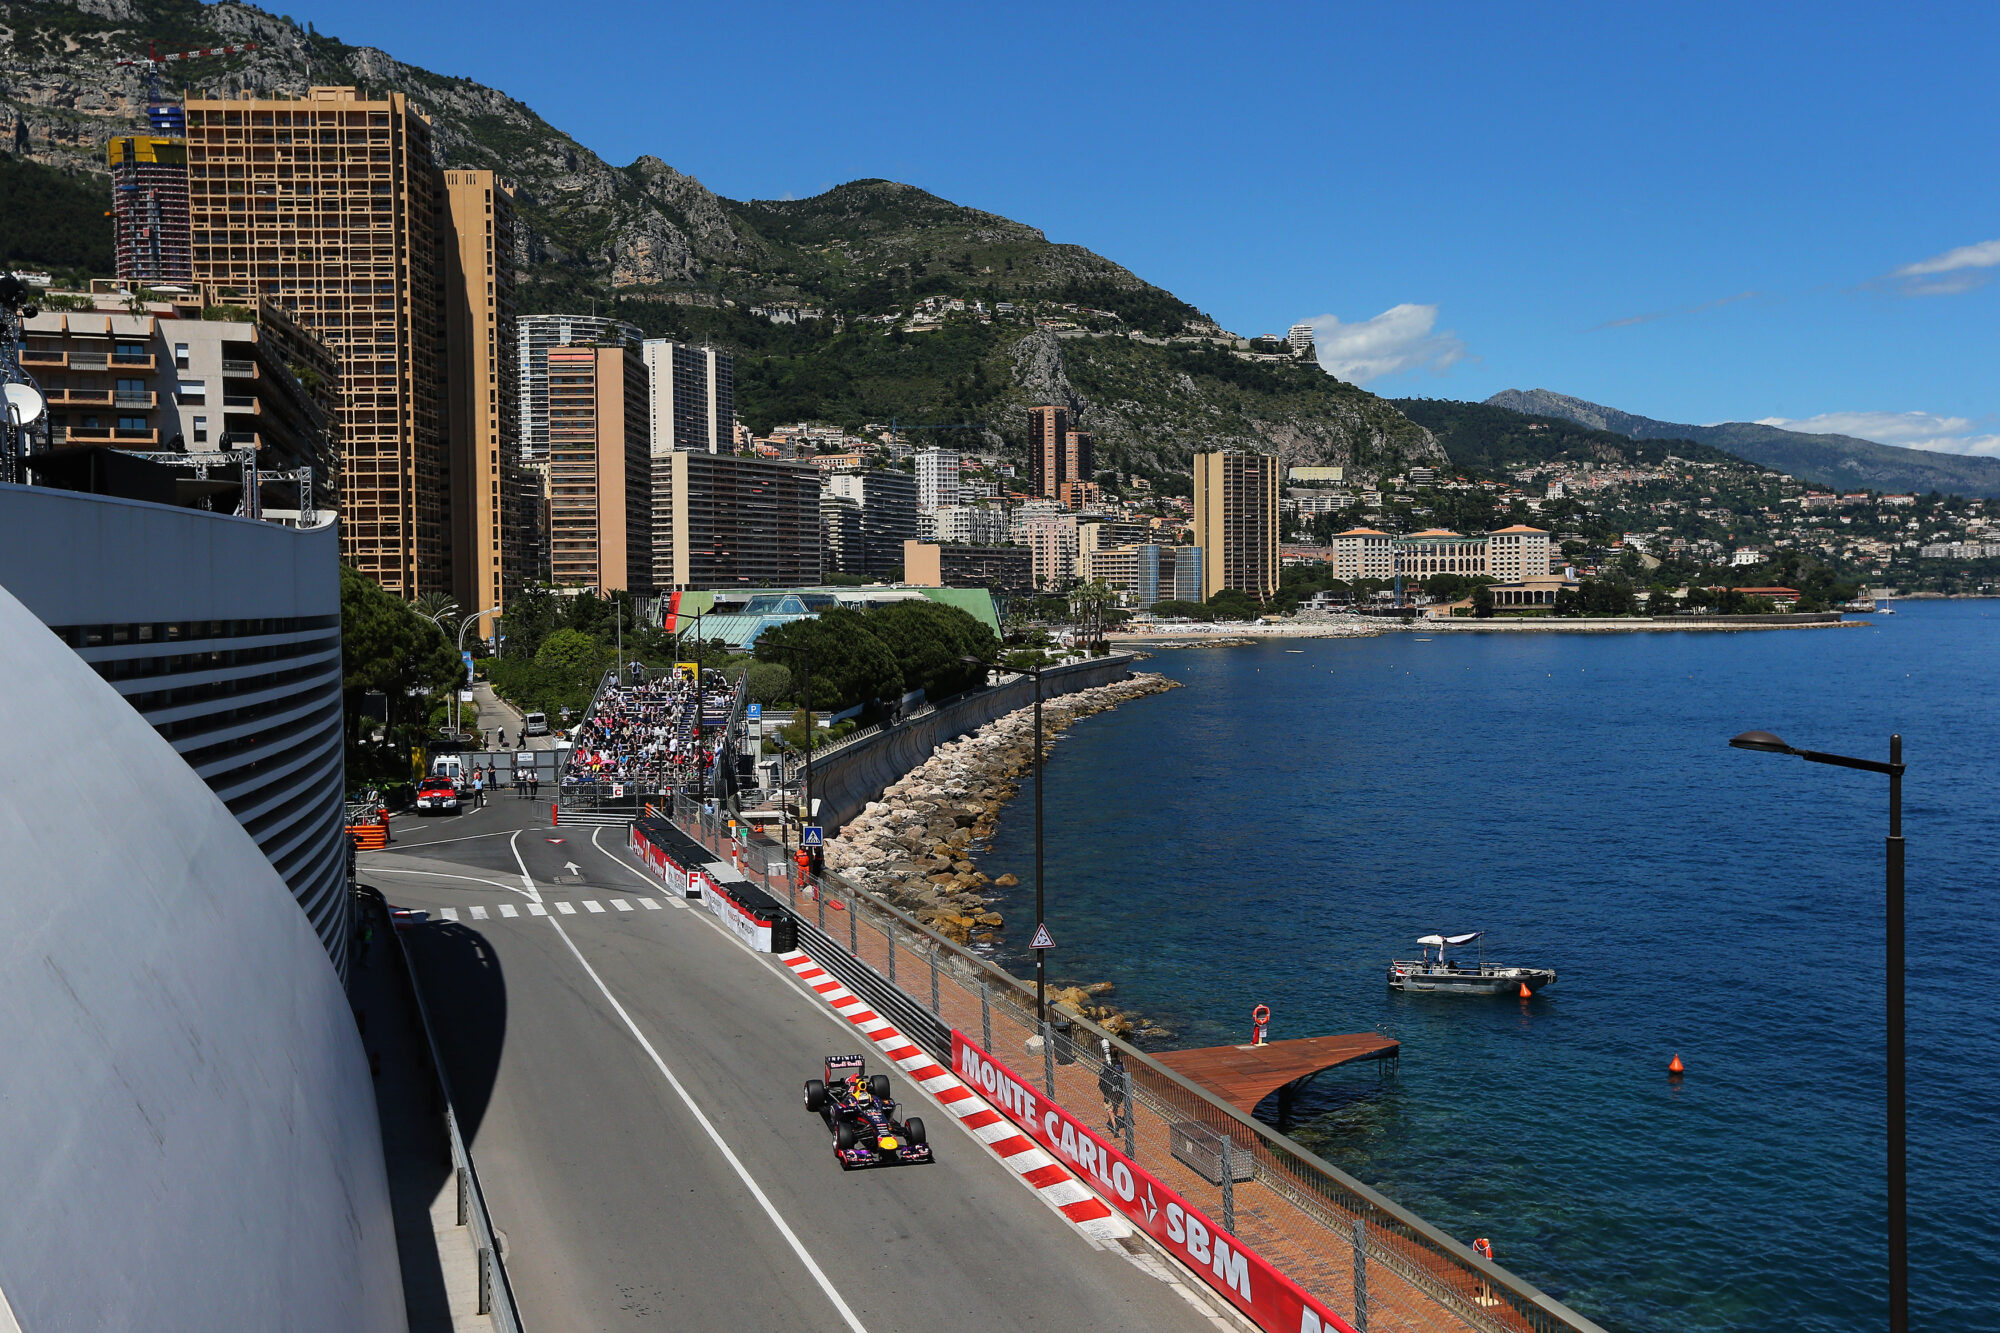 Primary Photo For: {47535, Doppio podio per Infiniti Red Bull Racing al Gran Premio di Monaco}..jpeg